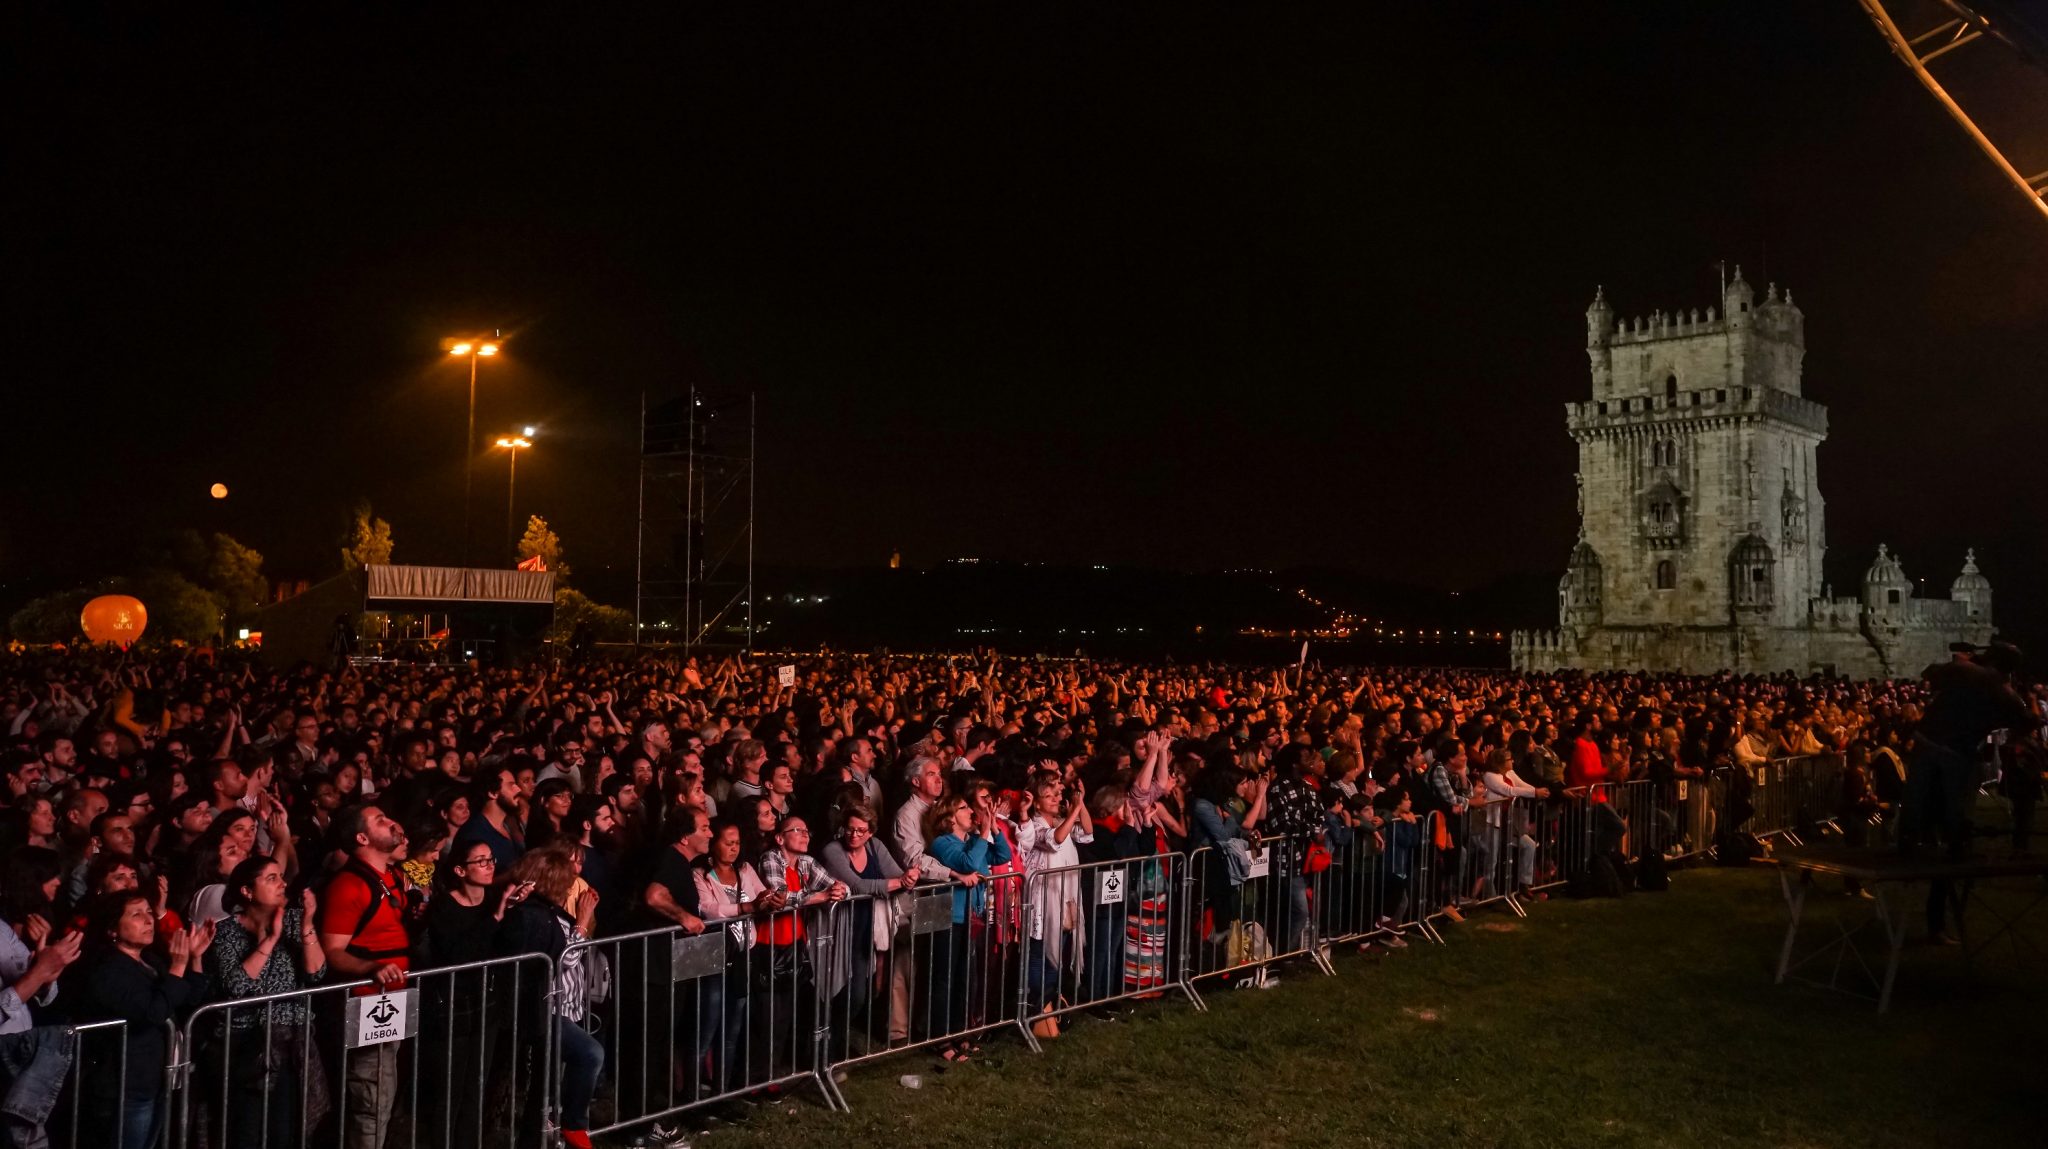 Visão geral dos milhares de espetadores do concerto Refavela 40 a partir do palco, com a Torre de Belém ao fundo